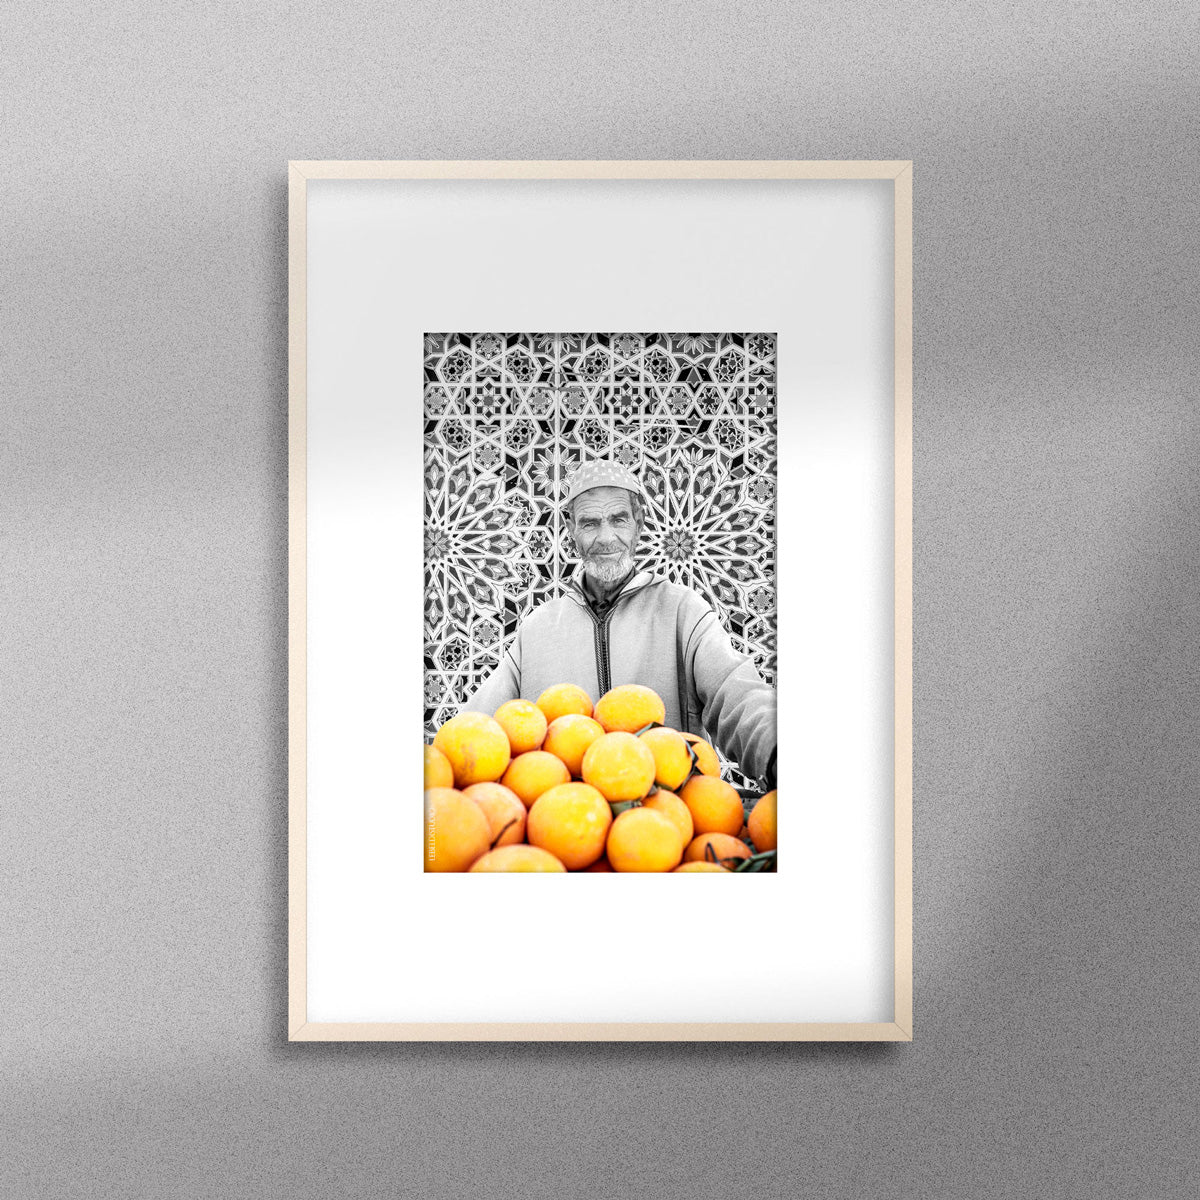 Tableau décoratif en noir et blanc d'un vieux marchand d'oranges très souriant, encadré dans un cadre en bois - Format A4.